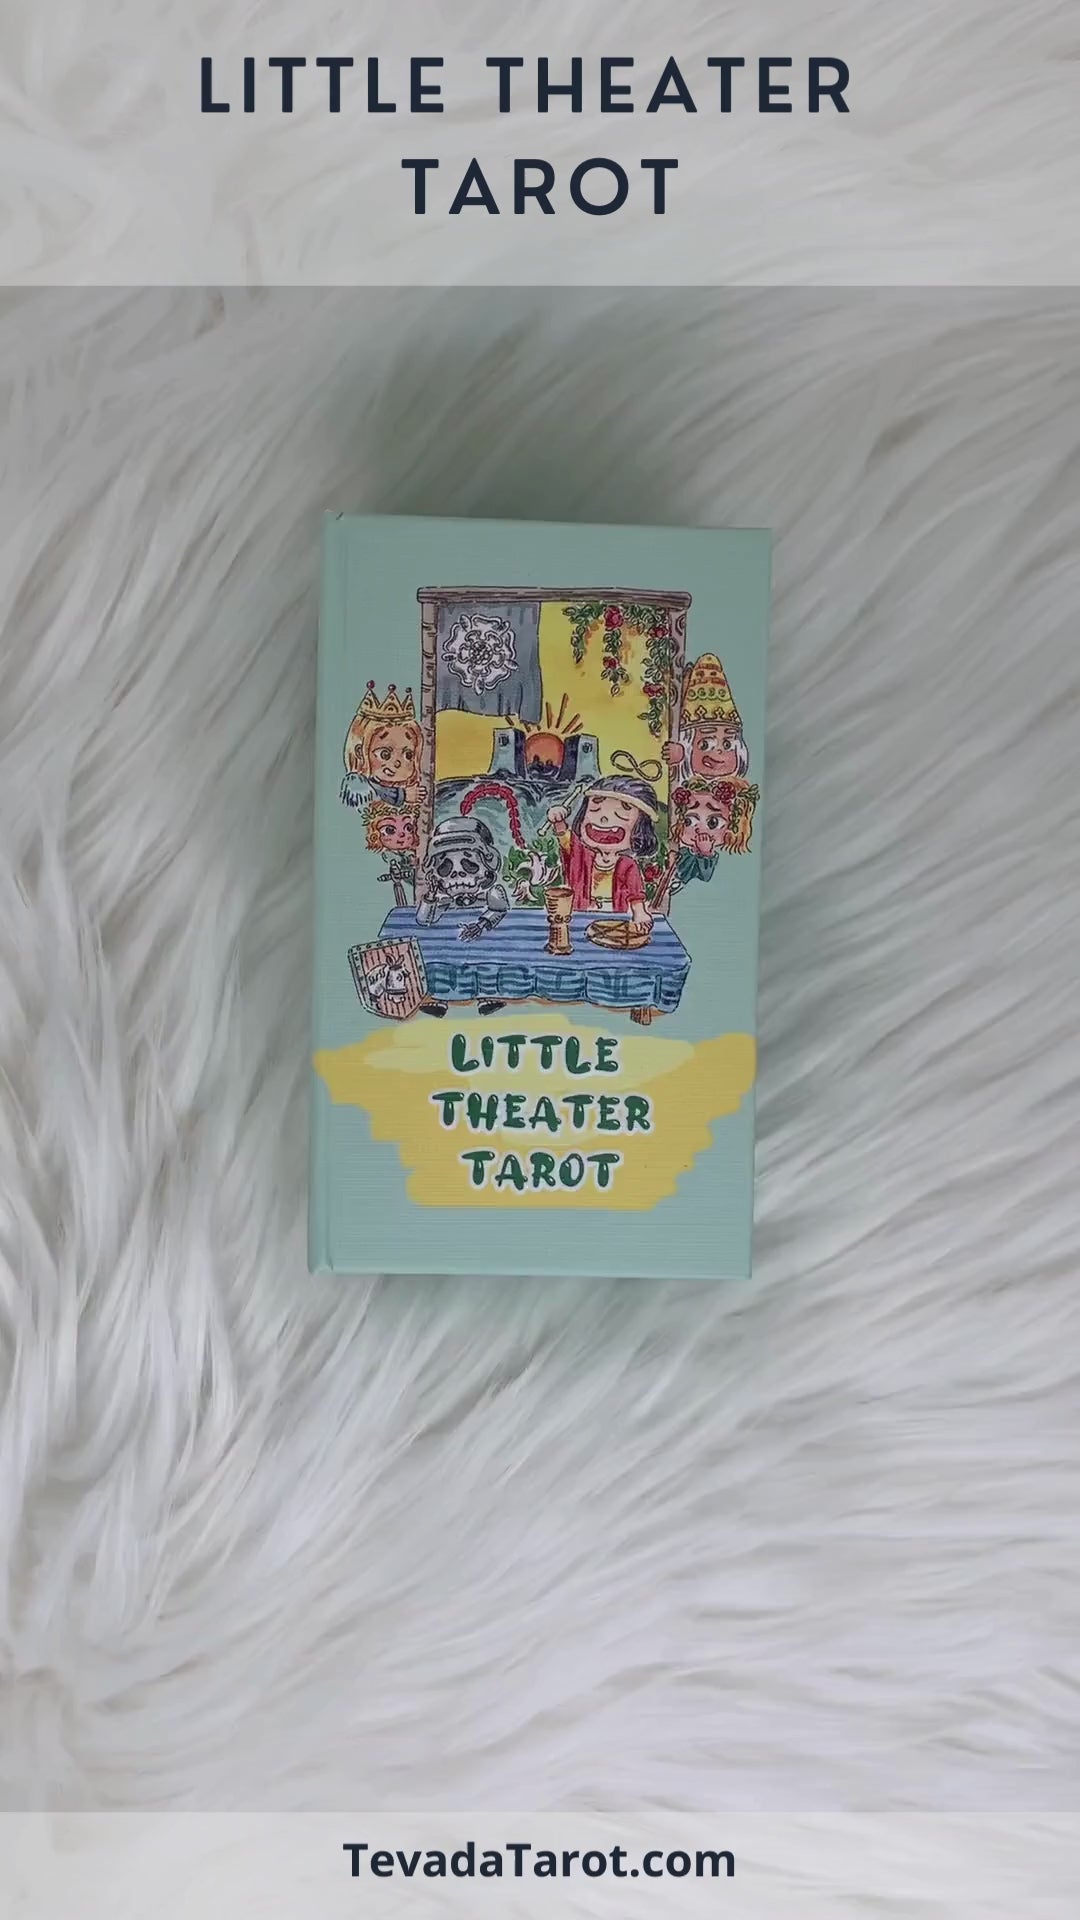 Little Theater Tarot